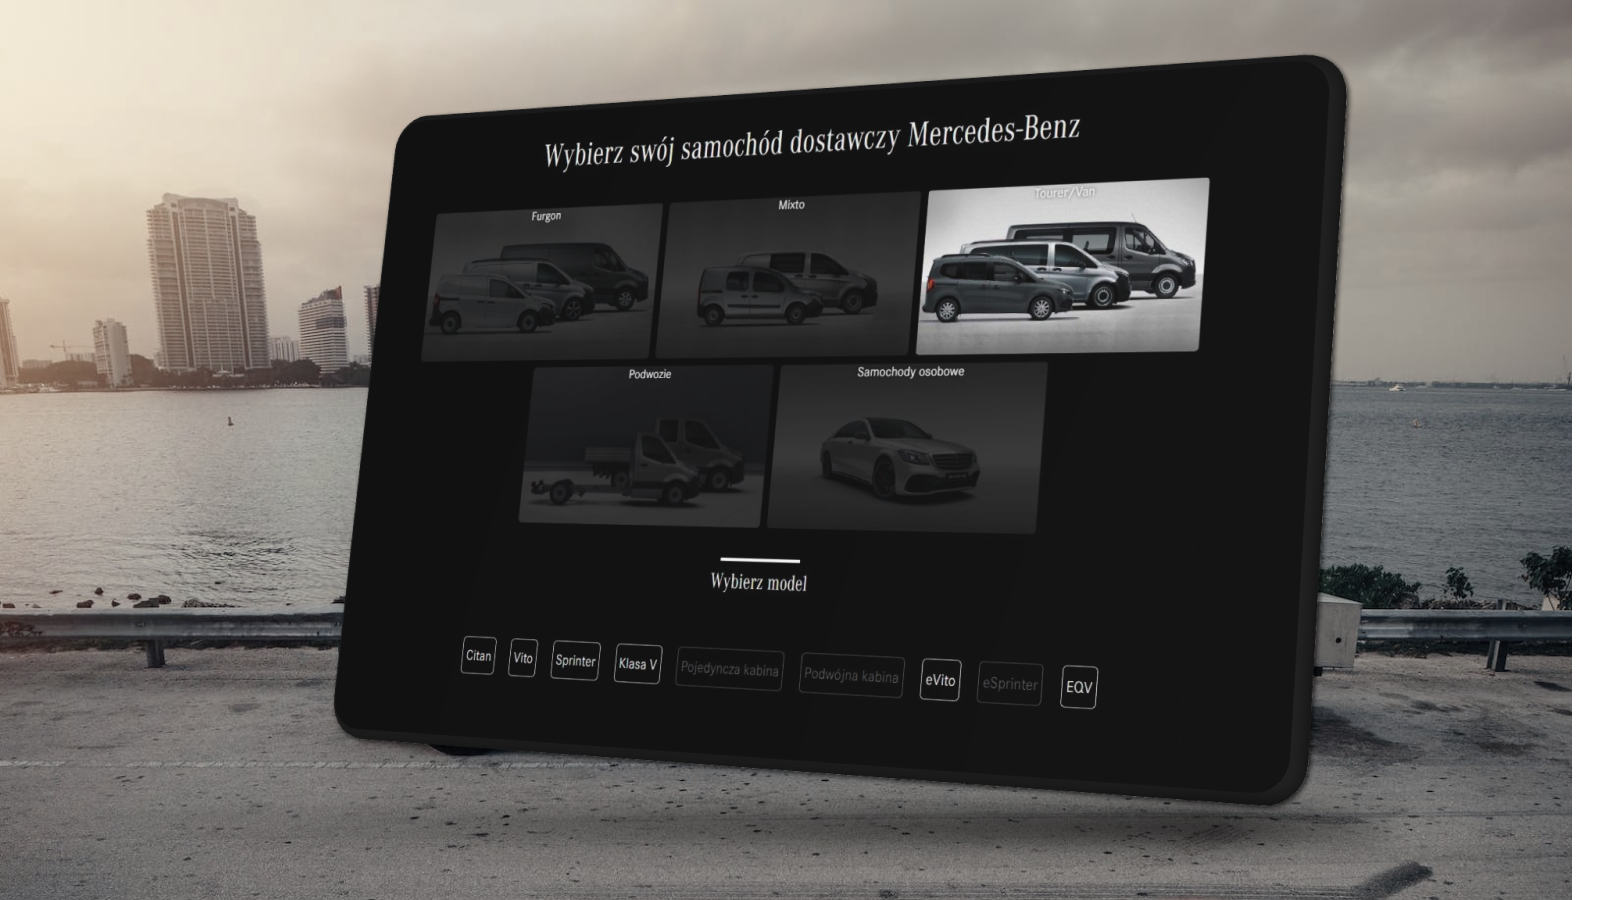 lewitujący ekran startowy platformy leasingowej mercedesa z kategoriami samochodów dostawczych. Elegancja i ciemne barwy platformy uwydatniają zdjęcia samochodów wpasowując się w styl marki.